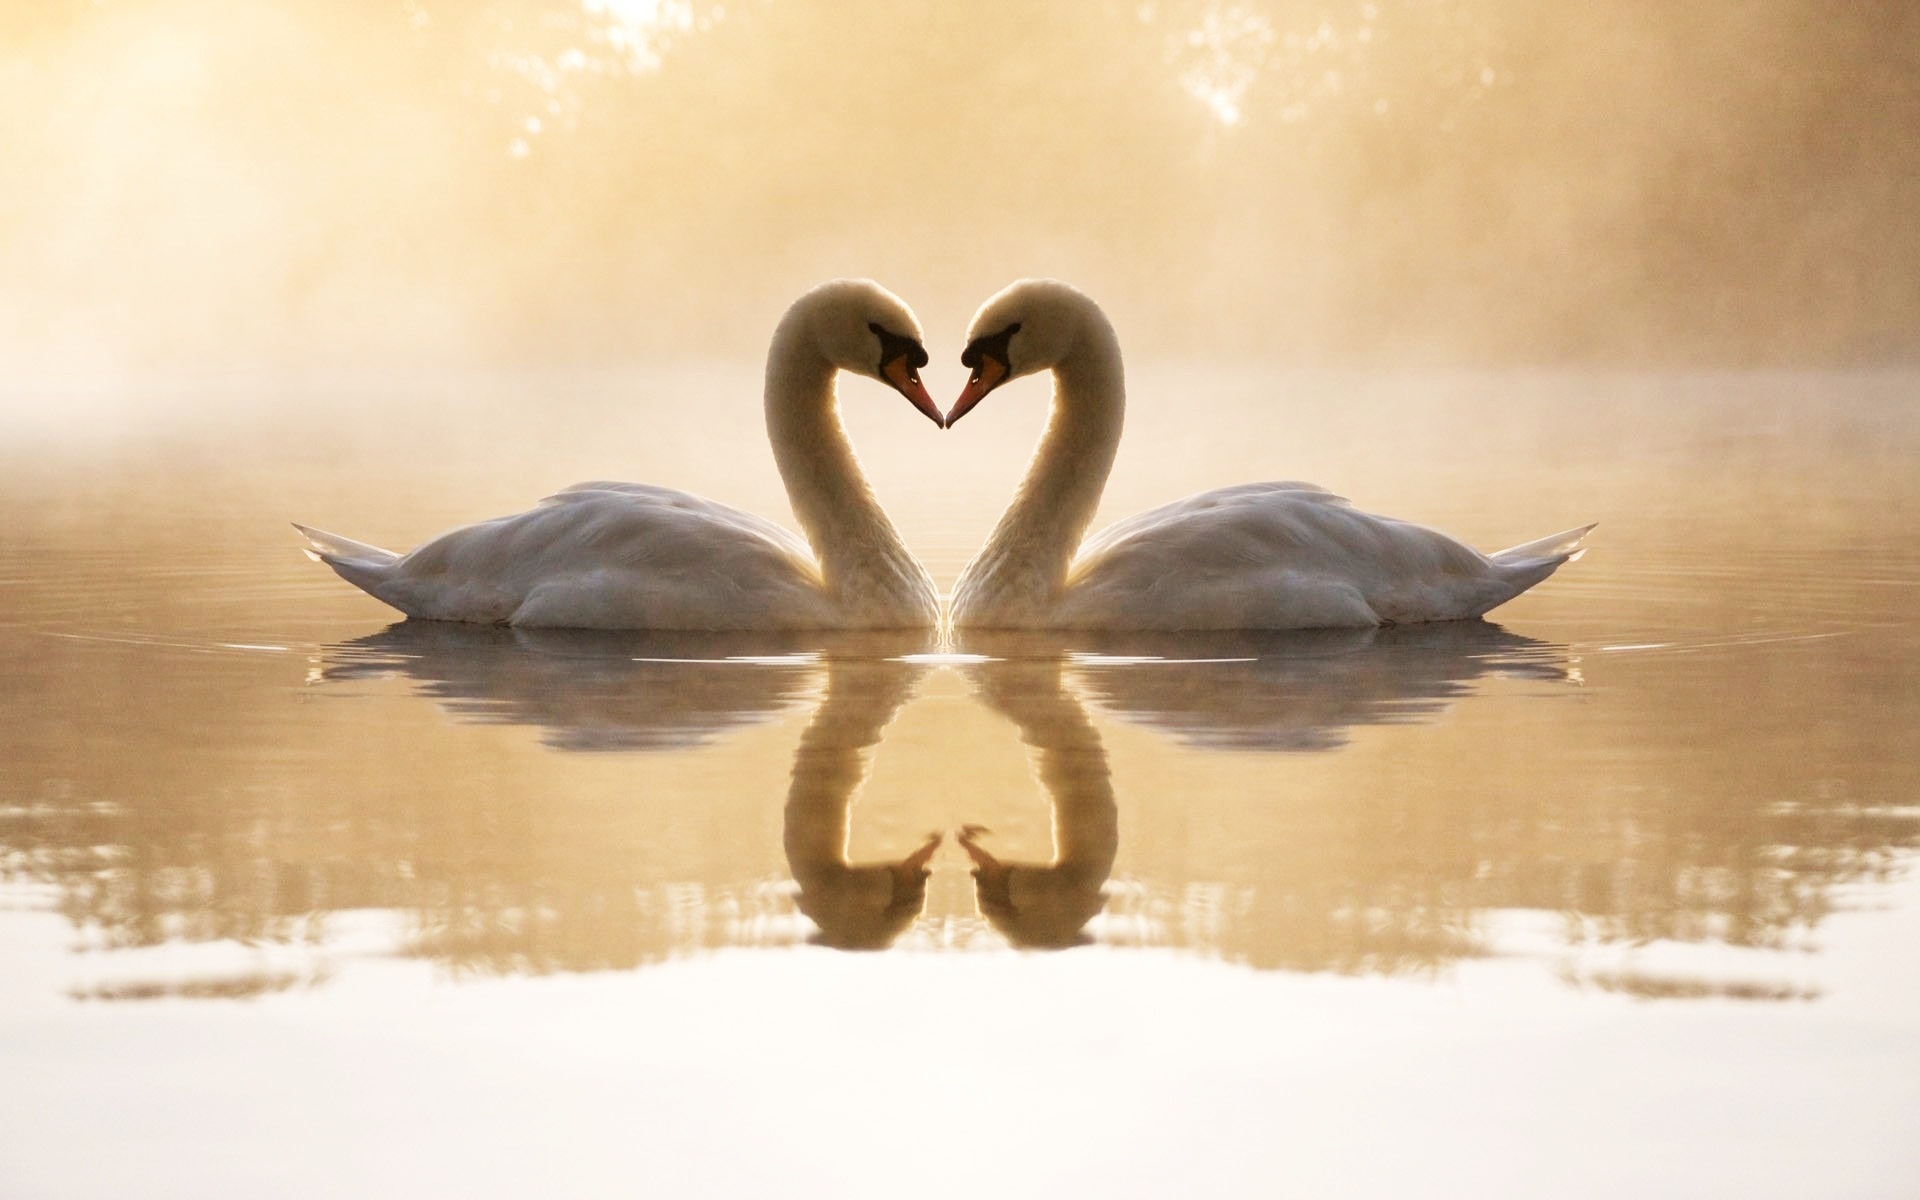 Loving Swans9784313592 - Loving Swans - Swans, Loving, horse